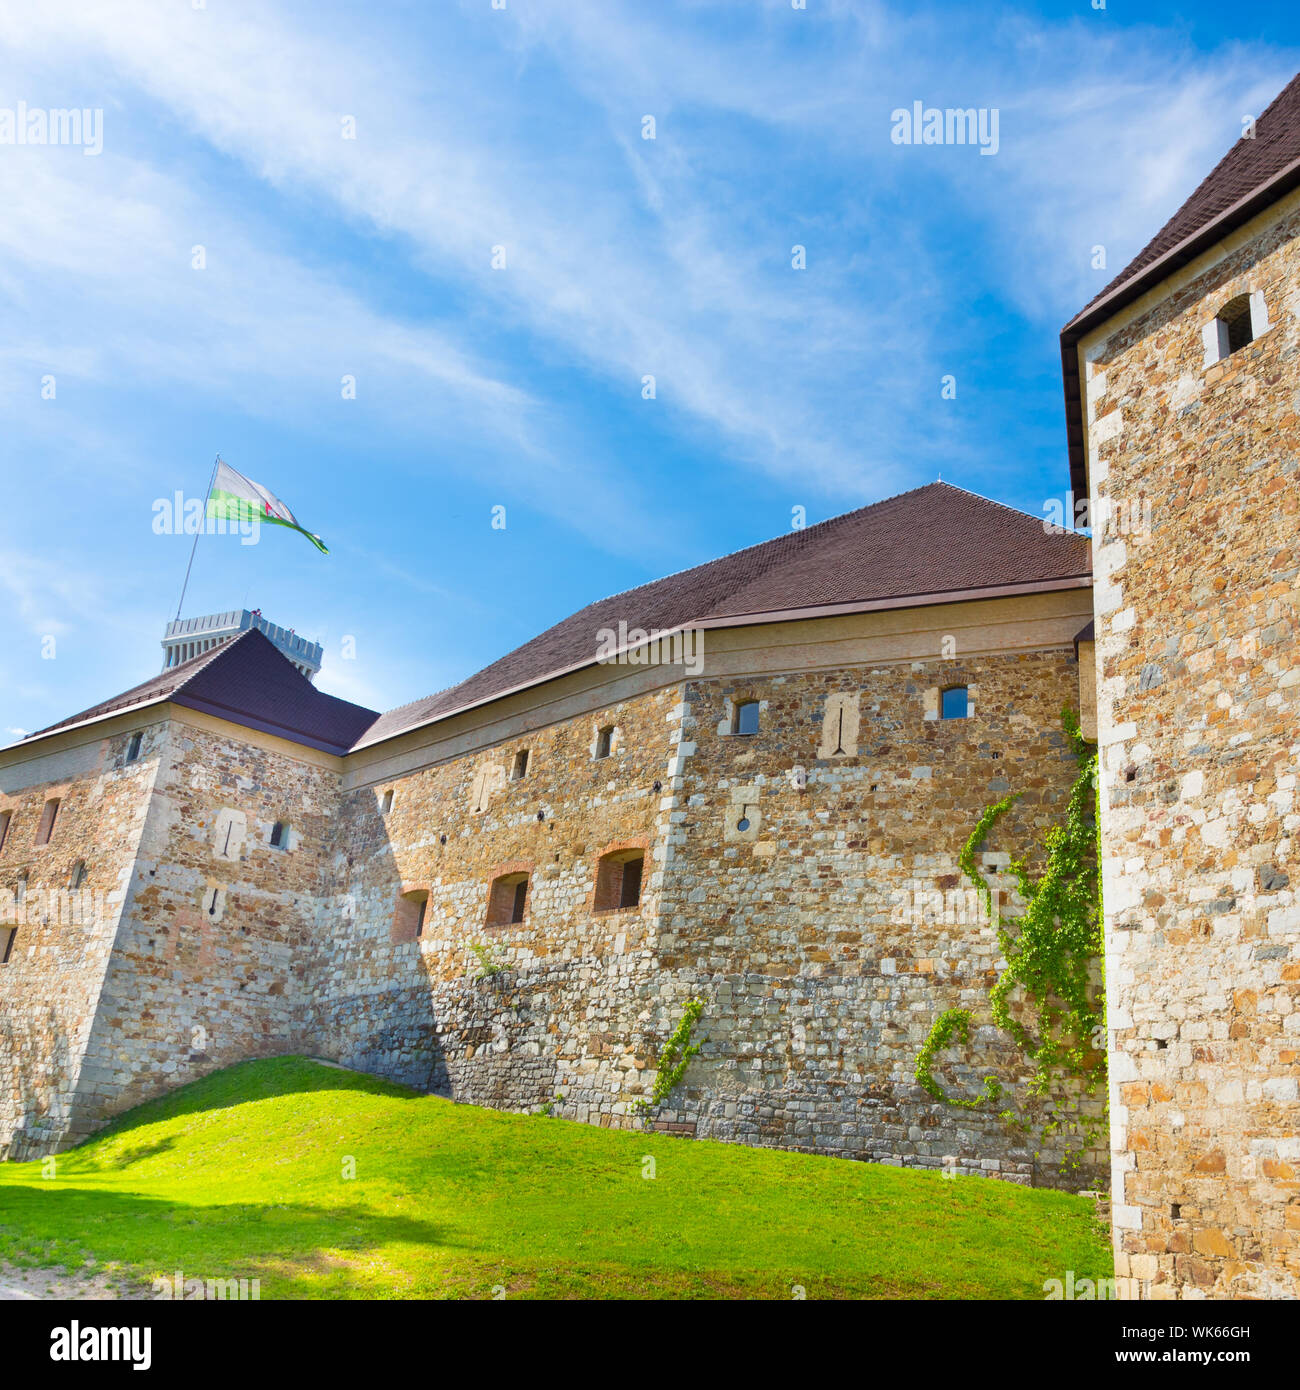 Ljubljana castle - Ljubljanski grad, Slovenia, Europe. Stock Photo